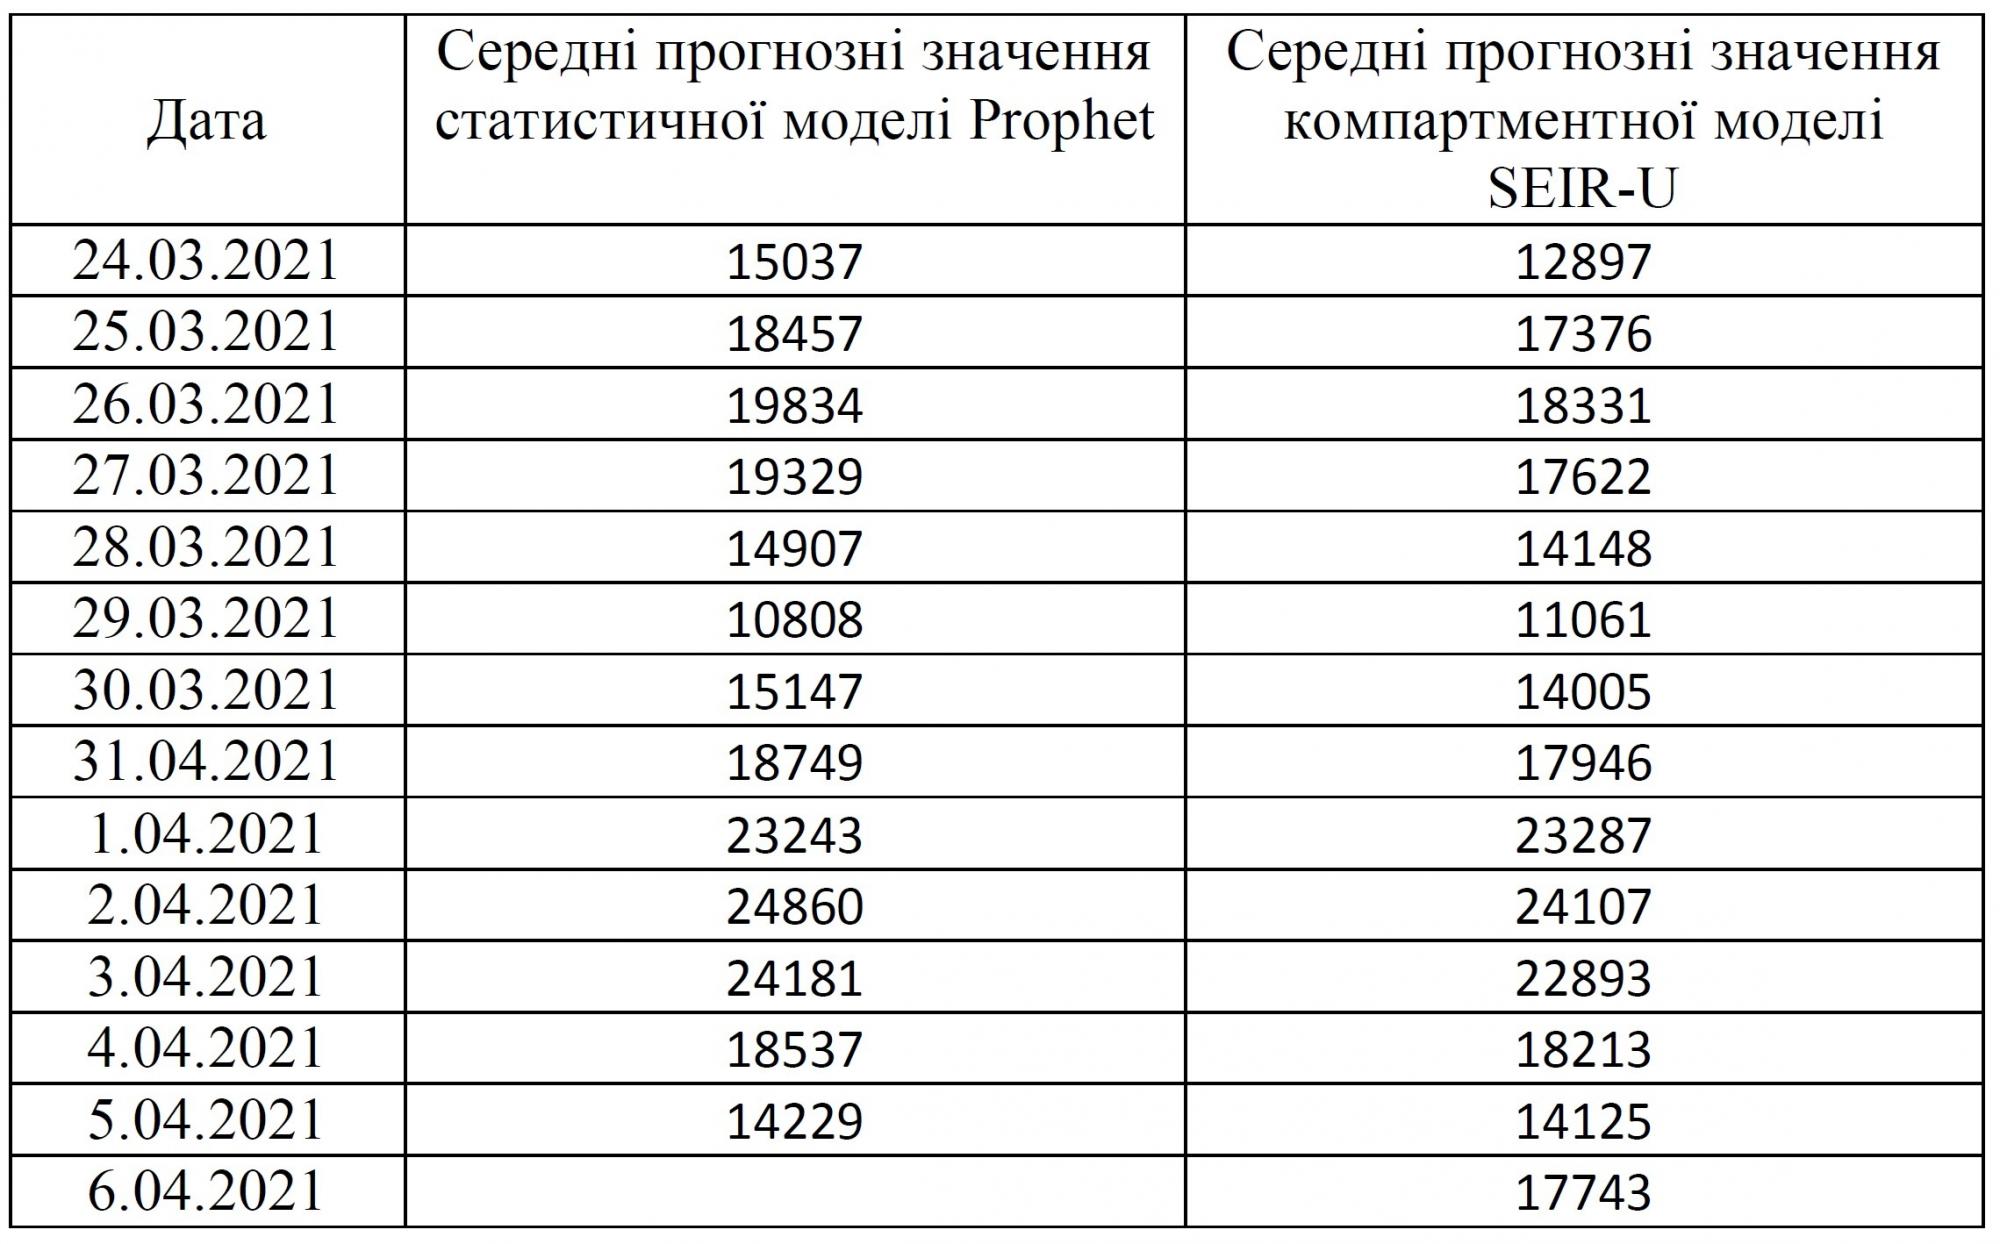 Ученые прогнозируют рост COVID-случаев в Украине как минимум до апреля